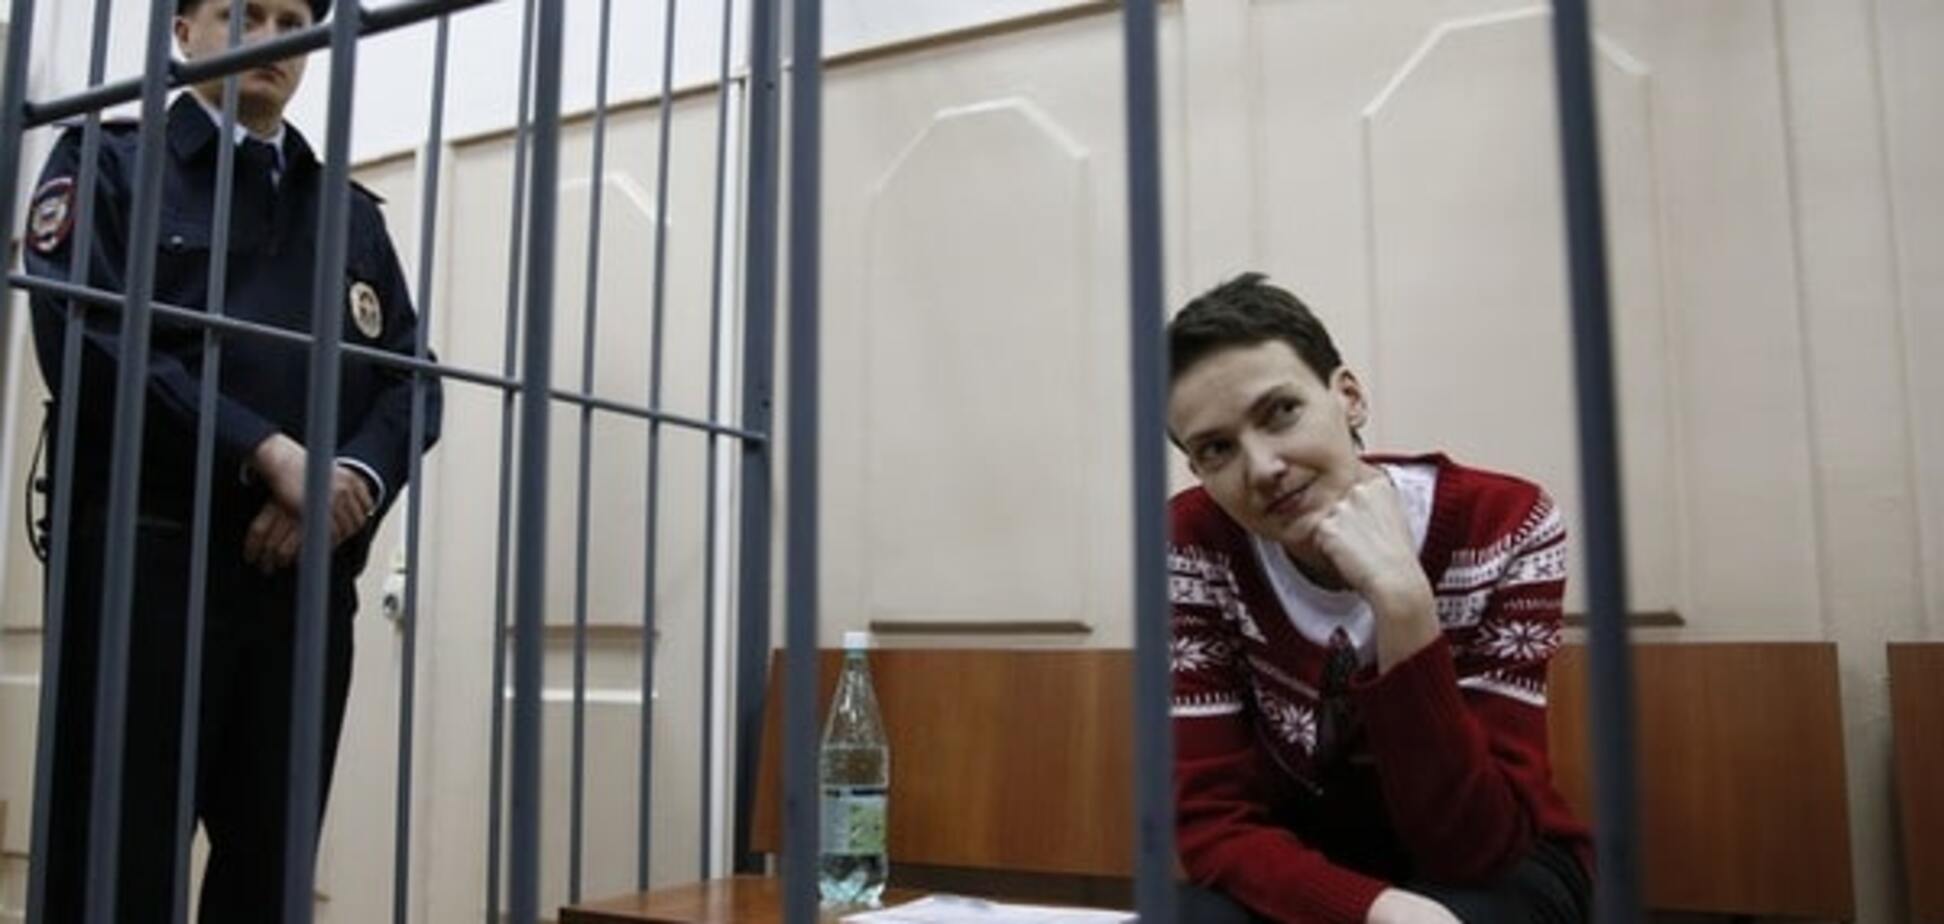 Савченко заборонили будь-які побачення до винесення вироку